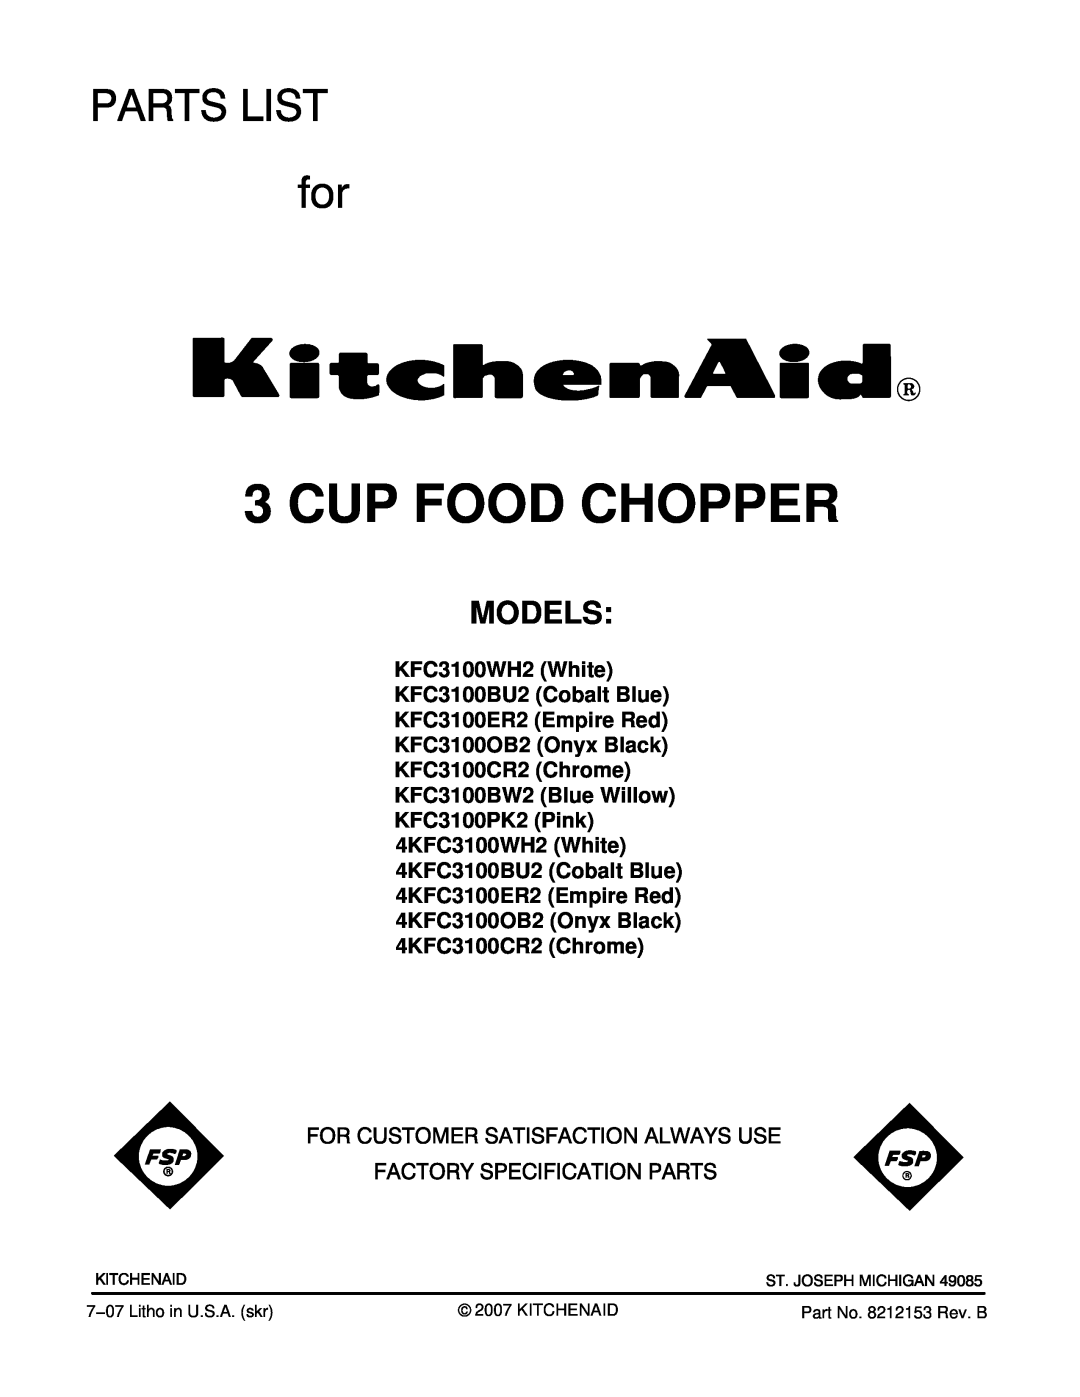 KitchenAid KFC3100BW2, KFC3100ER2, KFC3100BU2, KFC3100CR2 manual Models, Cup Food Chopper, Part No. 8212153 Rev. B 